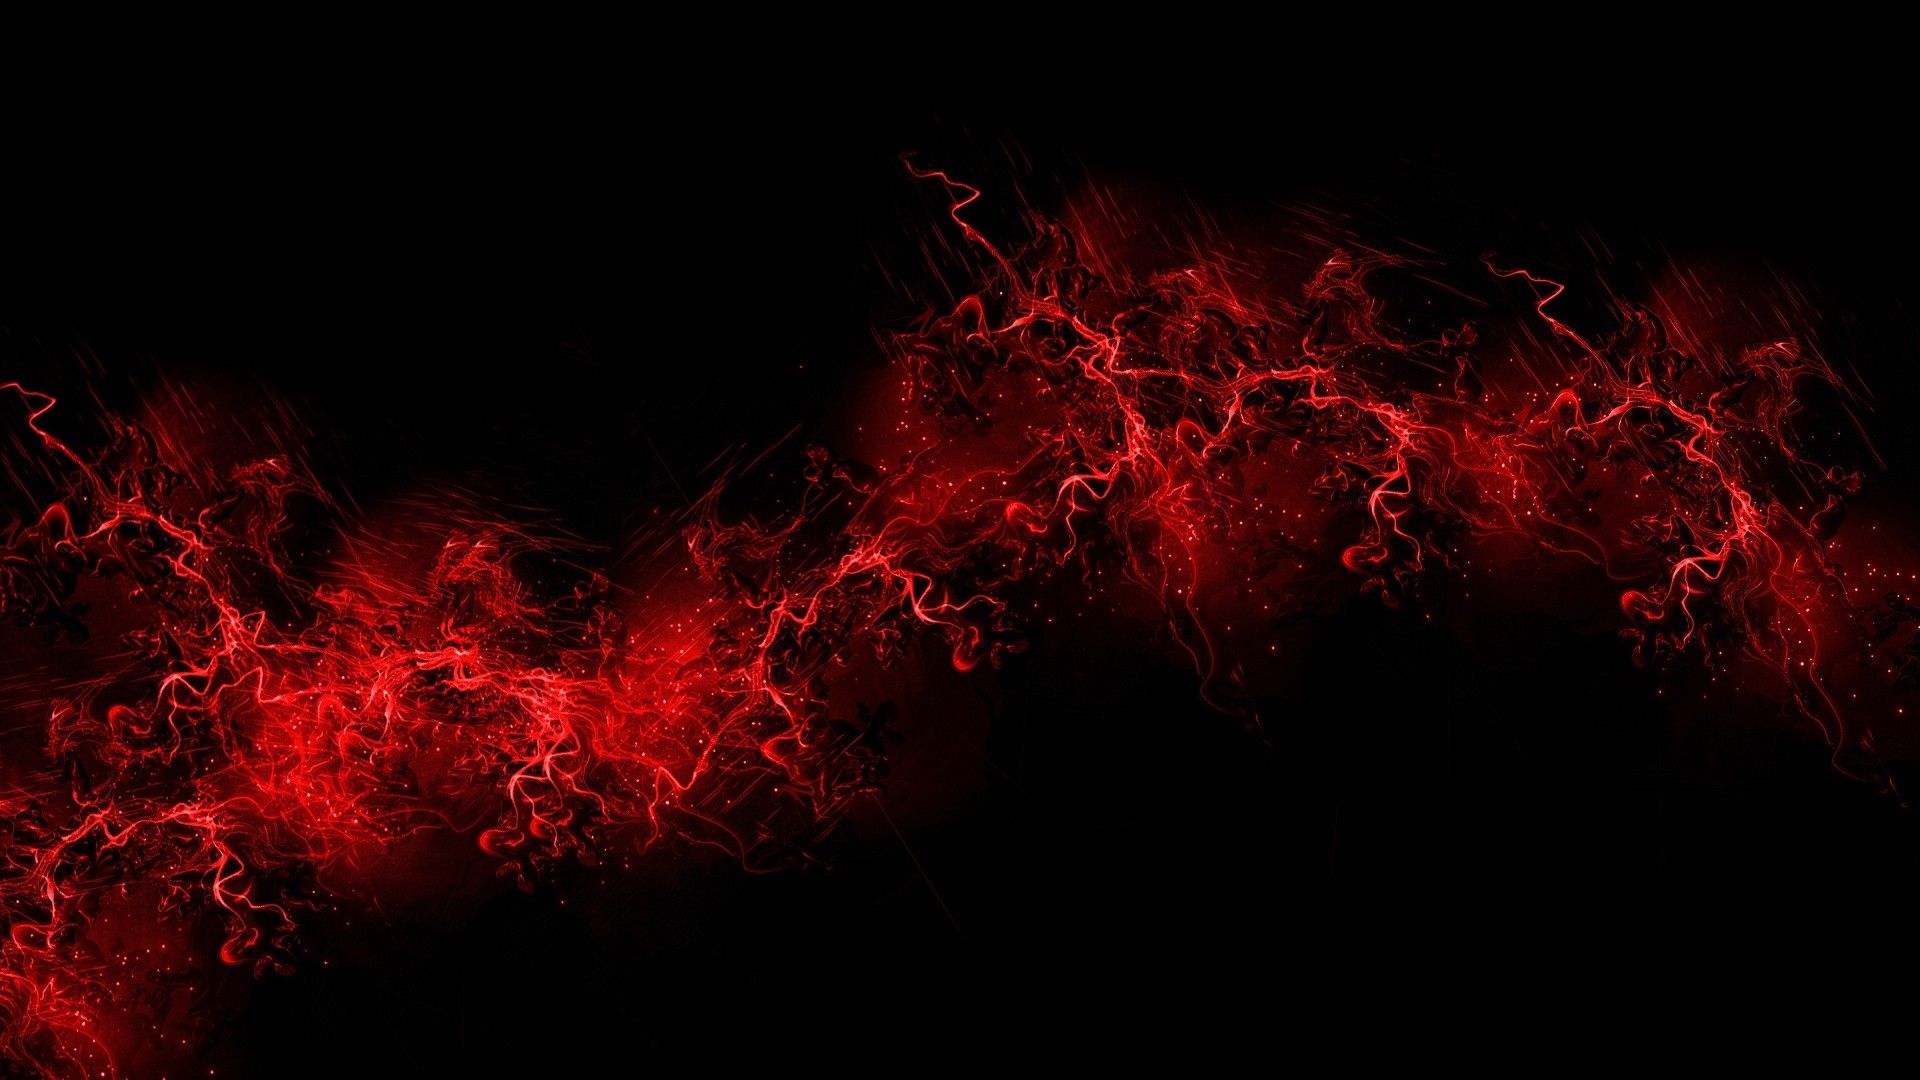 Red Gaming Wallpapers - Với sắc đỏ mạnh mẽ và cuốn hút, hình nền Red Gaming Wallpapers là sự lựa chọn lý tưởng cho những game thủ đang tìm kiếm một hình nền đậm chất nghệ thuật. Cùng khám phá những hình ảnh đẹp này để làm mới giao diện của máy tính của bạn.